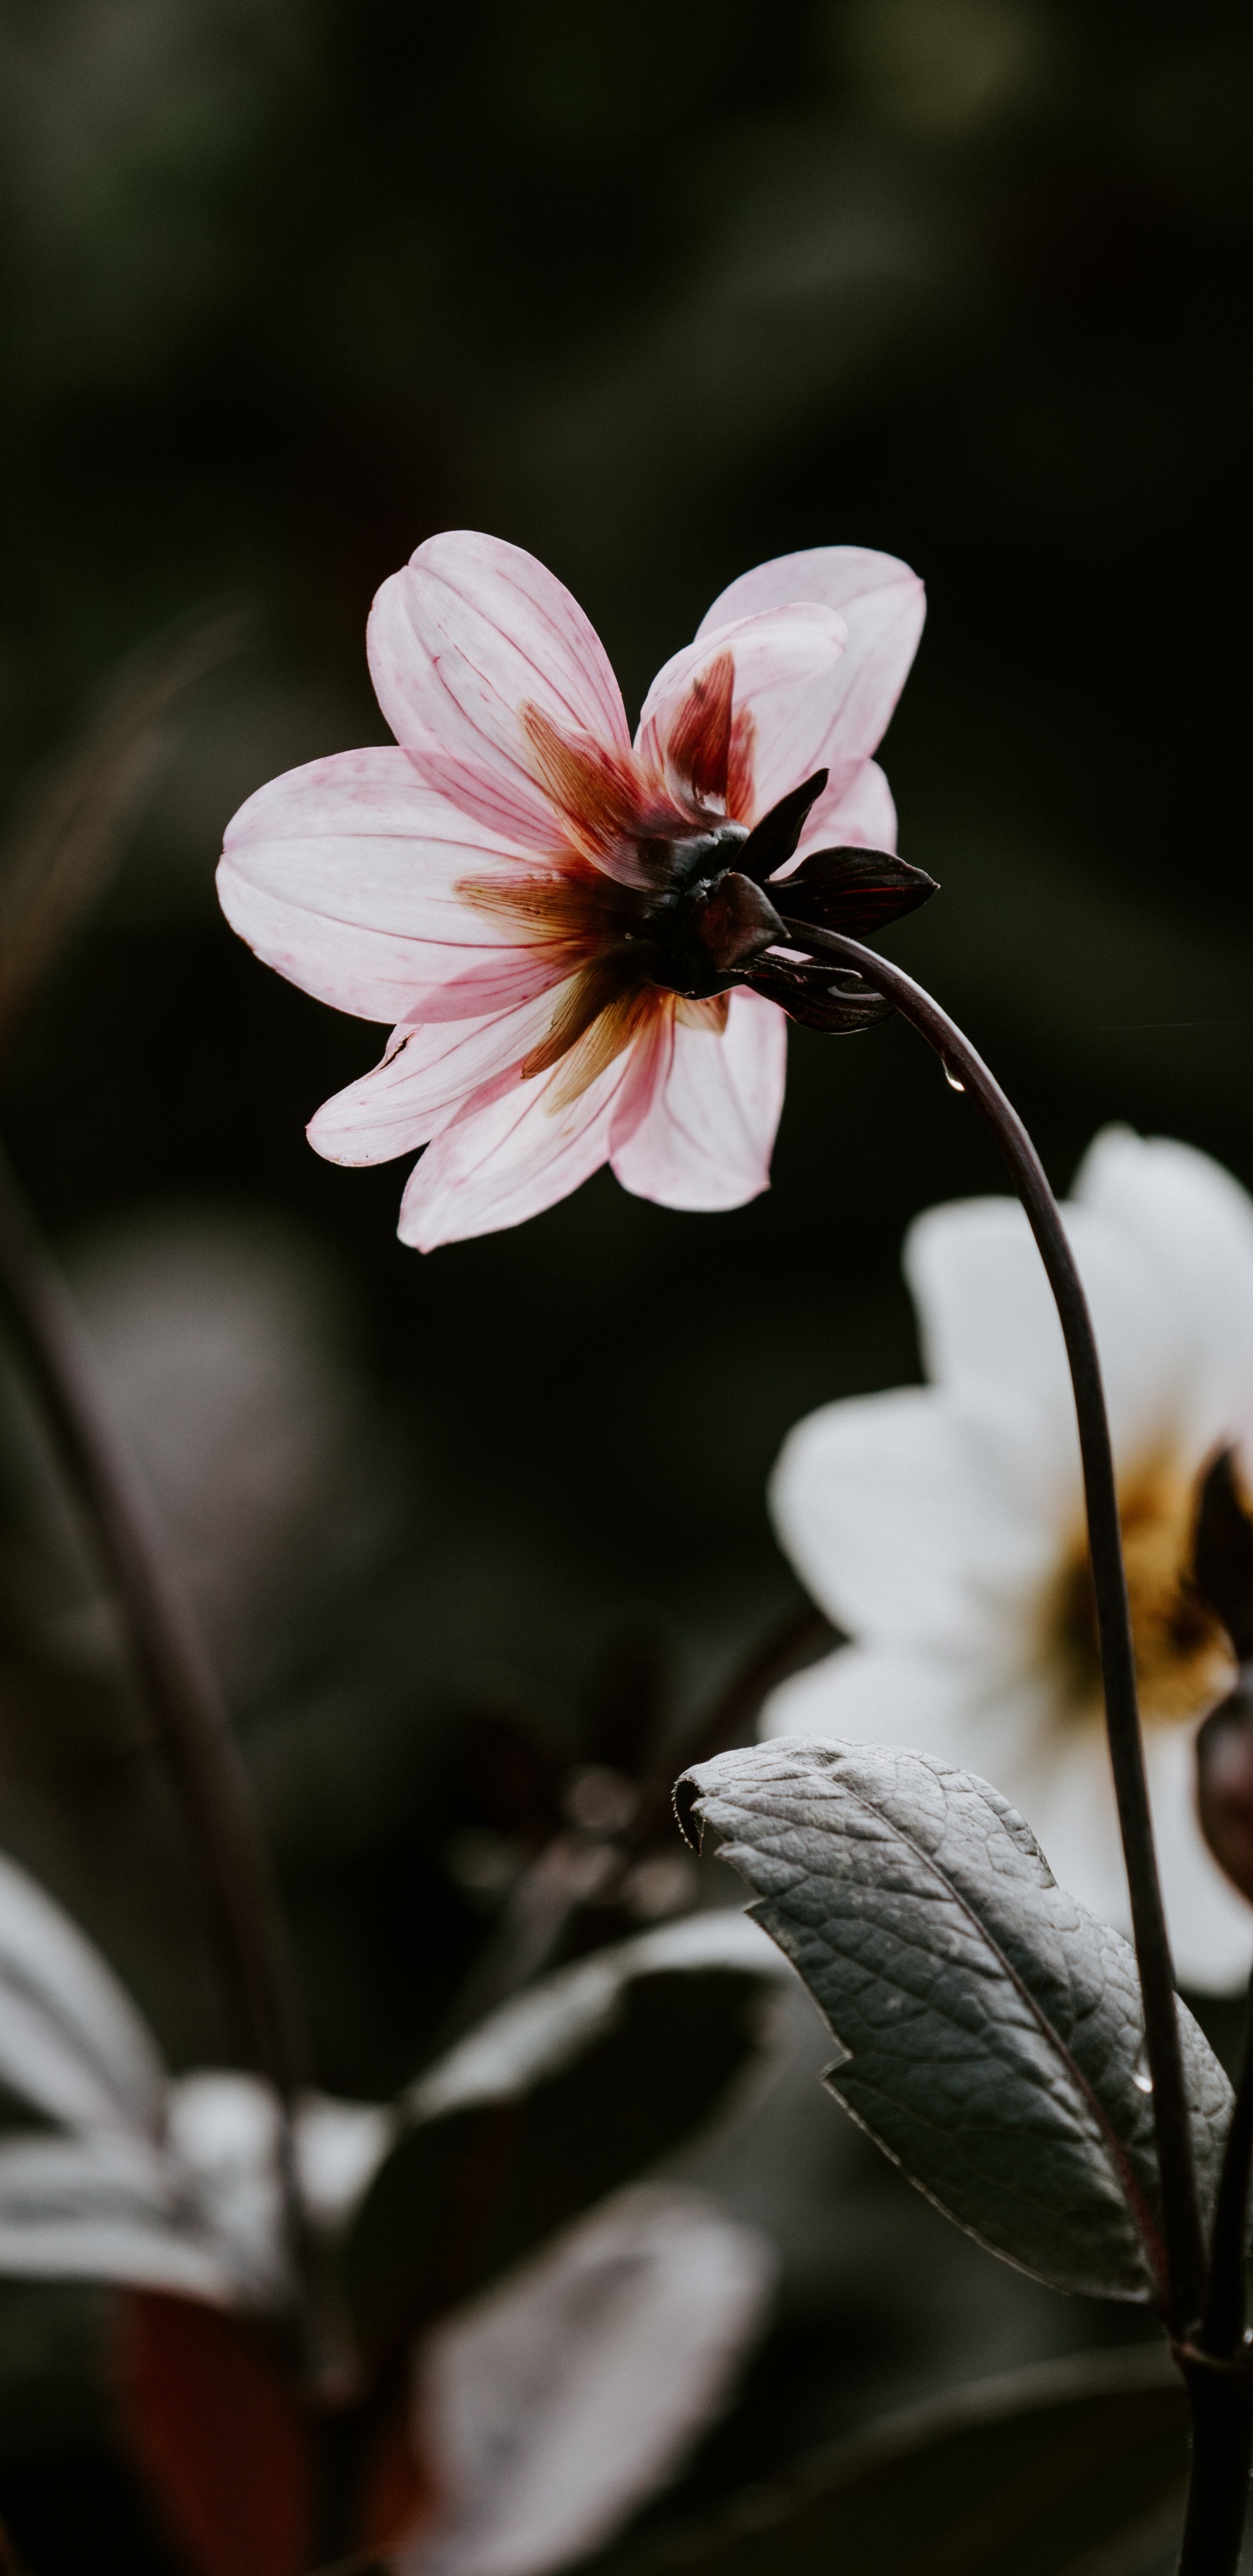 Pink and White Flower in Tilt Shift Lens. Wallpaper in 1440x2960 Resolution